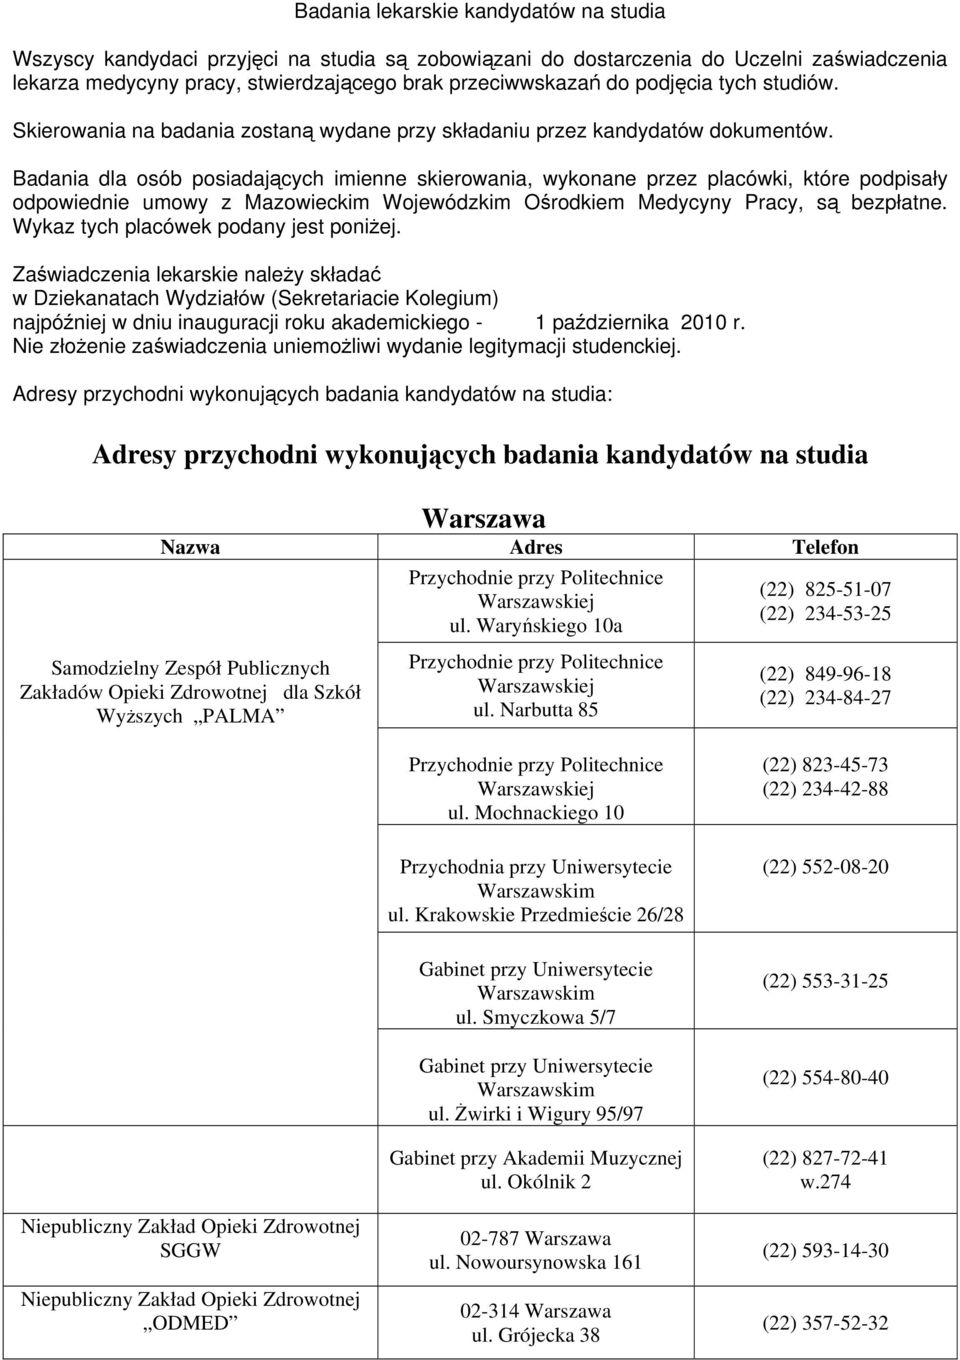 Badania dla osób posiadających imienne skierowania, wykonane przez placówki, które podpisały odpowiednie umowy z Mazowieckim Wojewódzkim Ośrodkiem Medycyny Pracy, są bezpłatne.